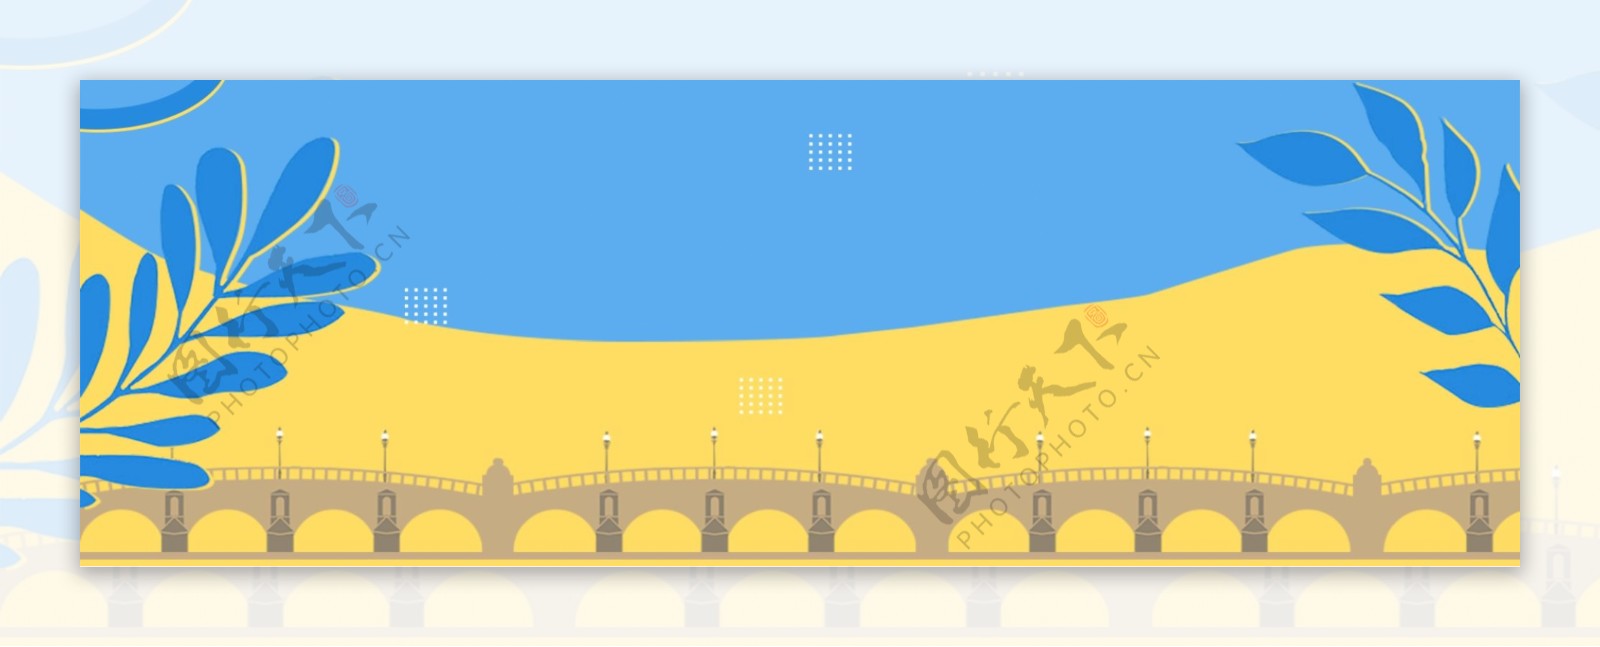 黄蓝色系卡通乔桥梁树枝树叶背景